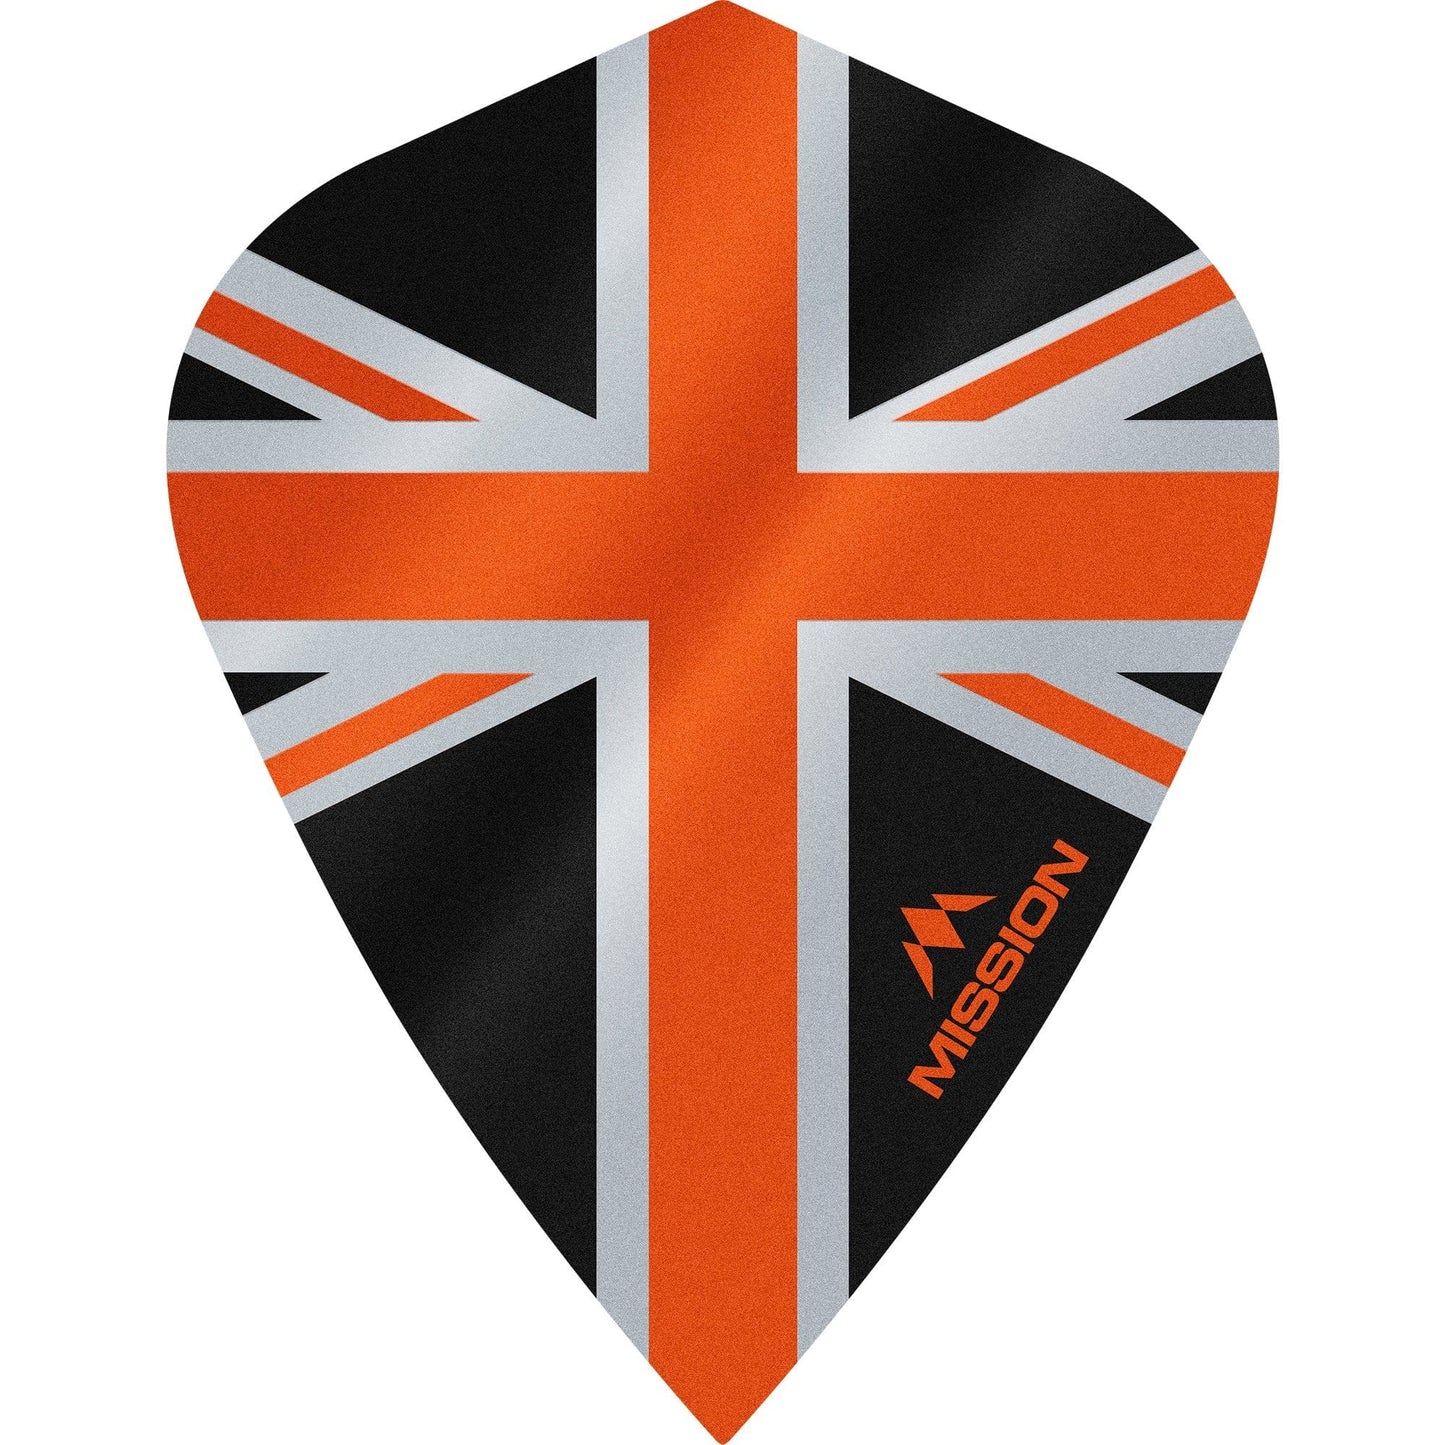 Mission Alliance Union Jack Dart Flights - Kite - Black Black Orange